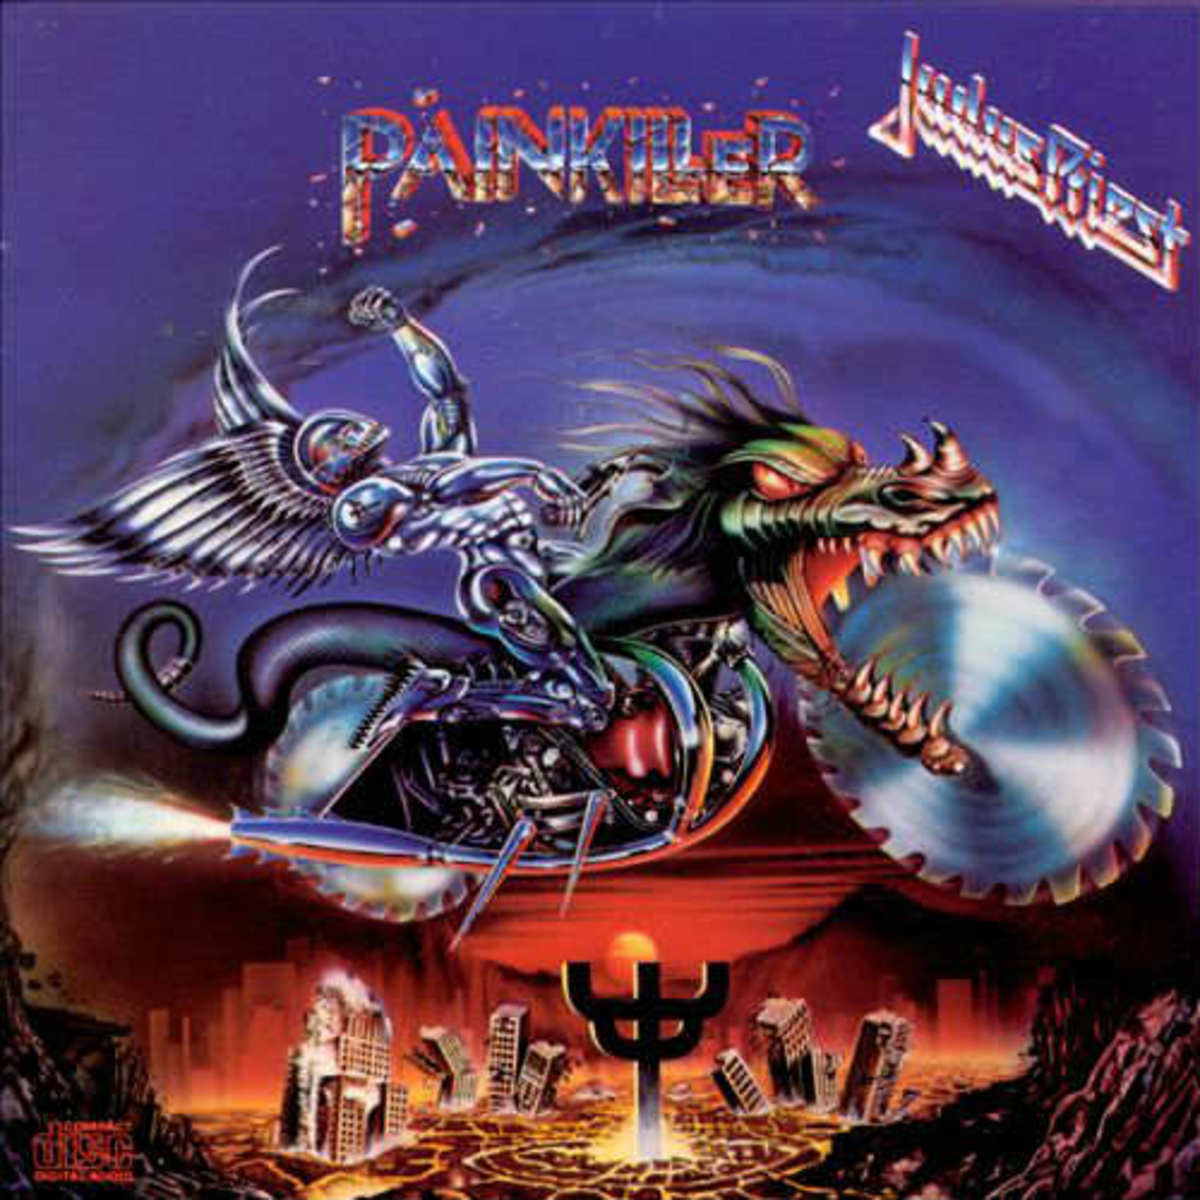 Album Review: Judas Priest's 